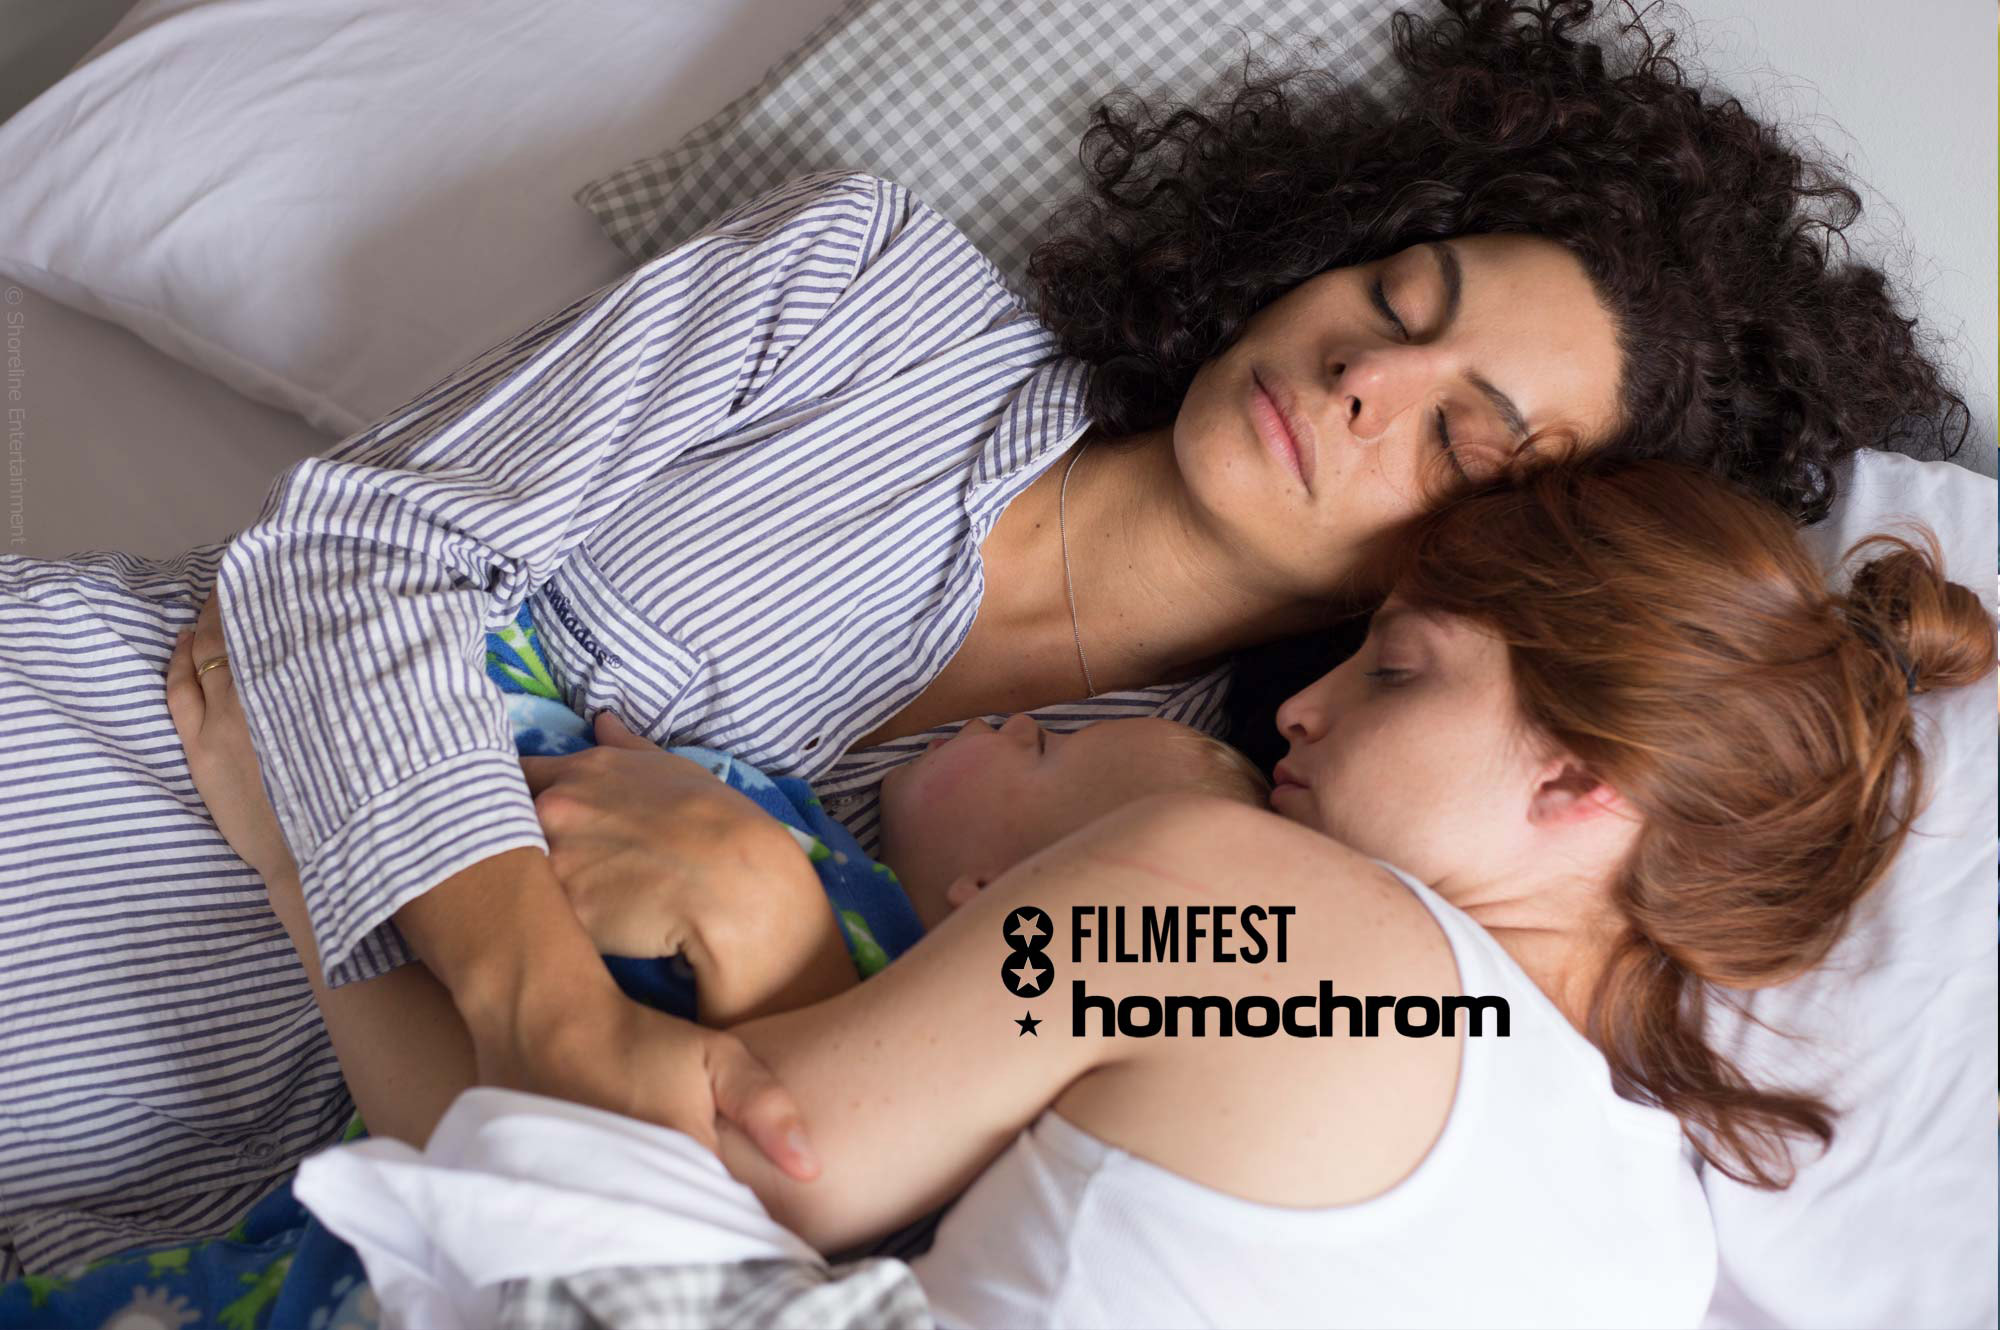 Filmfest homochrom 2018: Lesbian Films